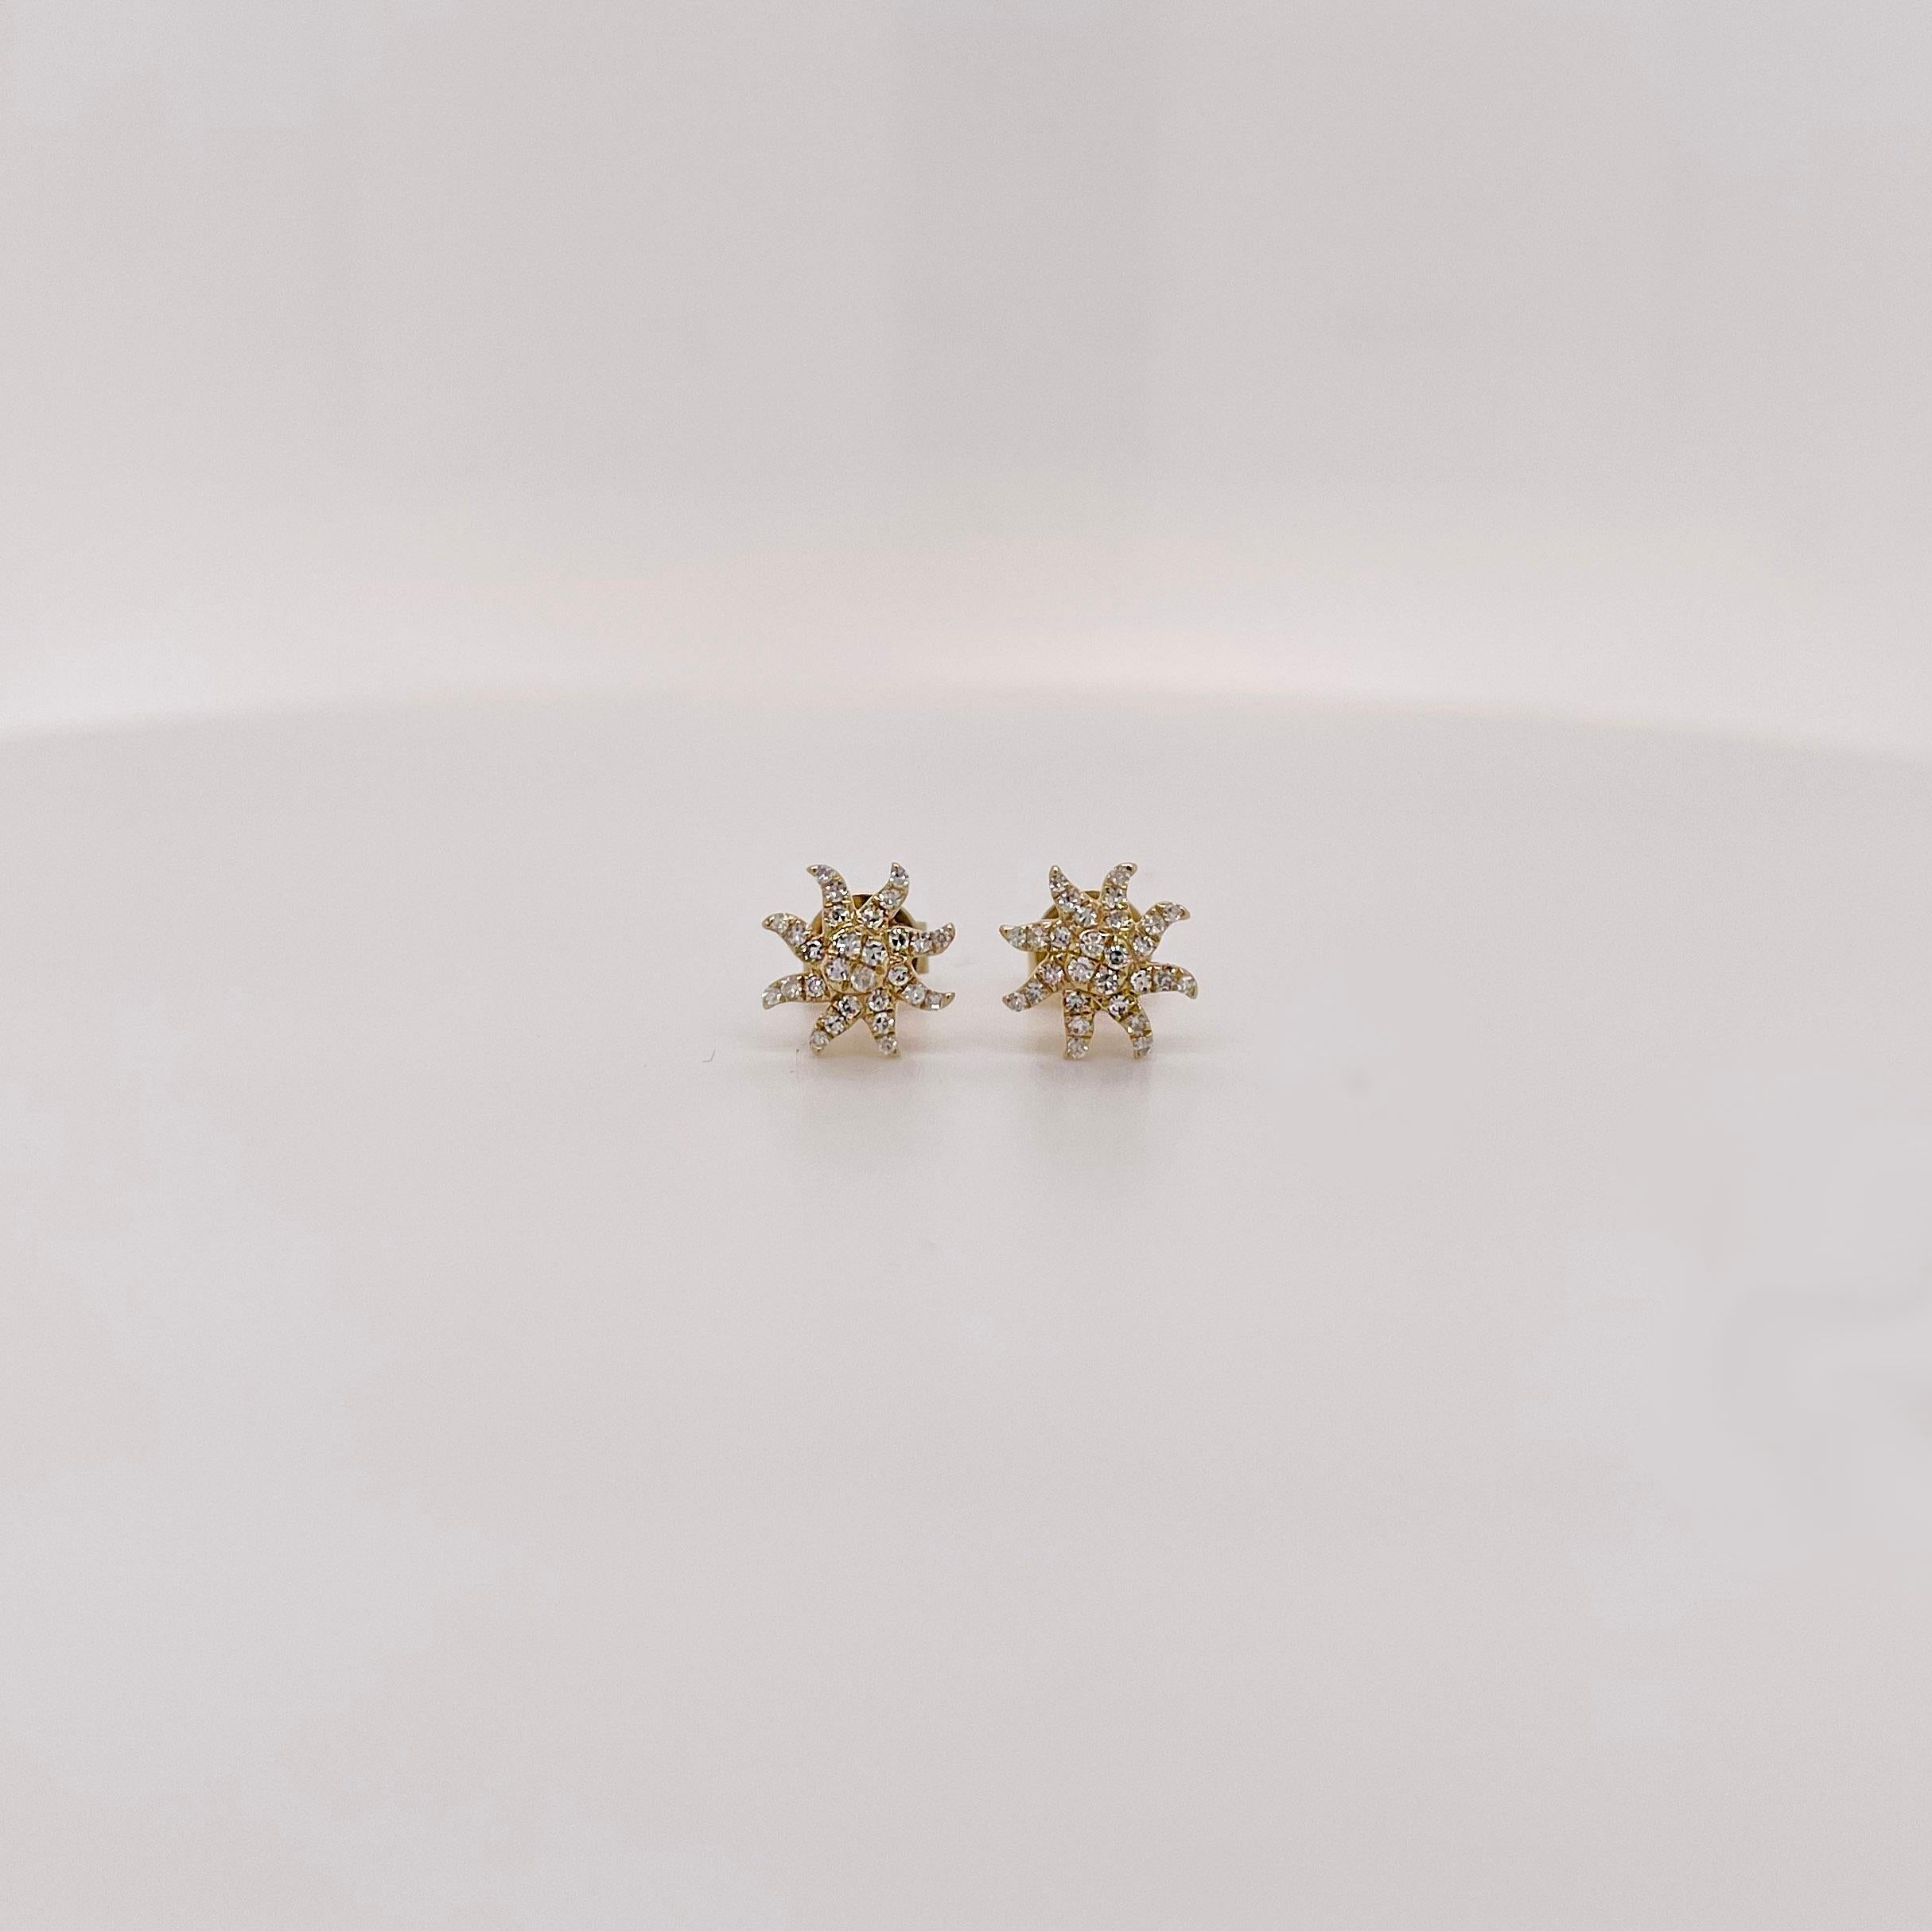 Suchst du nach einem neuen Paar hübscher Diamantohrstecker? Diese Starburst-Diamantohrstecker sind die perfekte Ergänzung für jede Schmucksammlung! Hergestellt mit echten, natürlichen Diamanten und massivem 14-karätigem Gelbgold. Tragen Sie diese